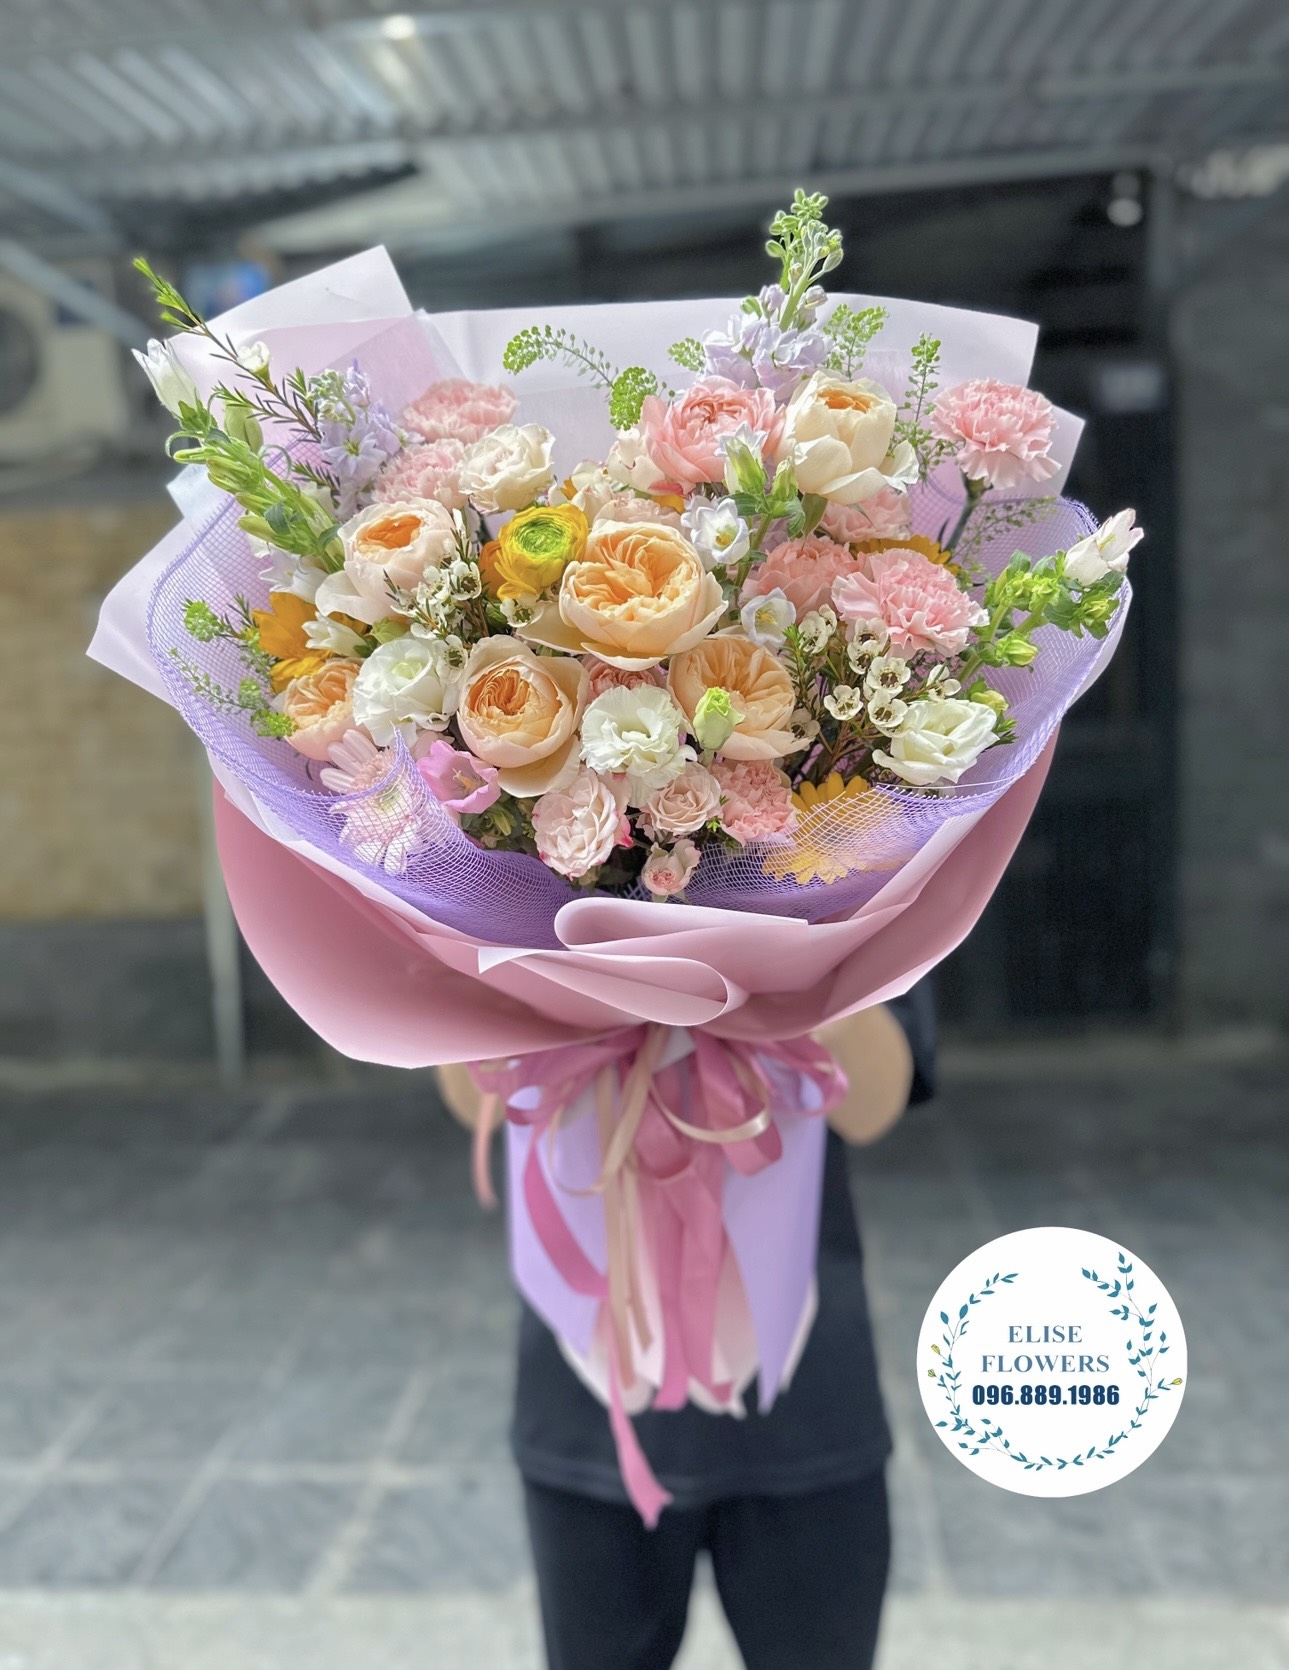 Bó hoa sinh nhật đẹp ở quận Bắc Từ Liêm - Hà Nội. Shop hoa tươi đẹp quận Bắc Từ Liêm.